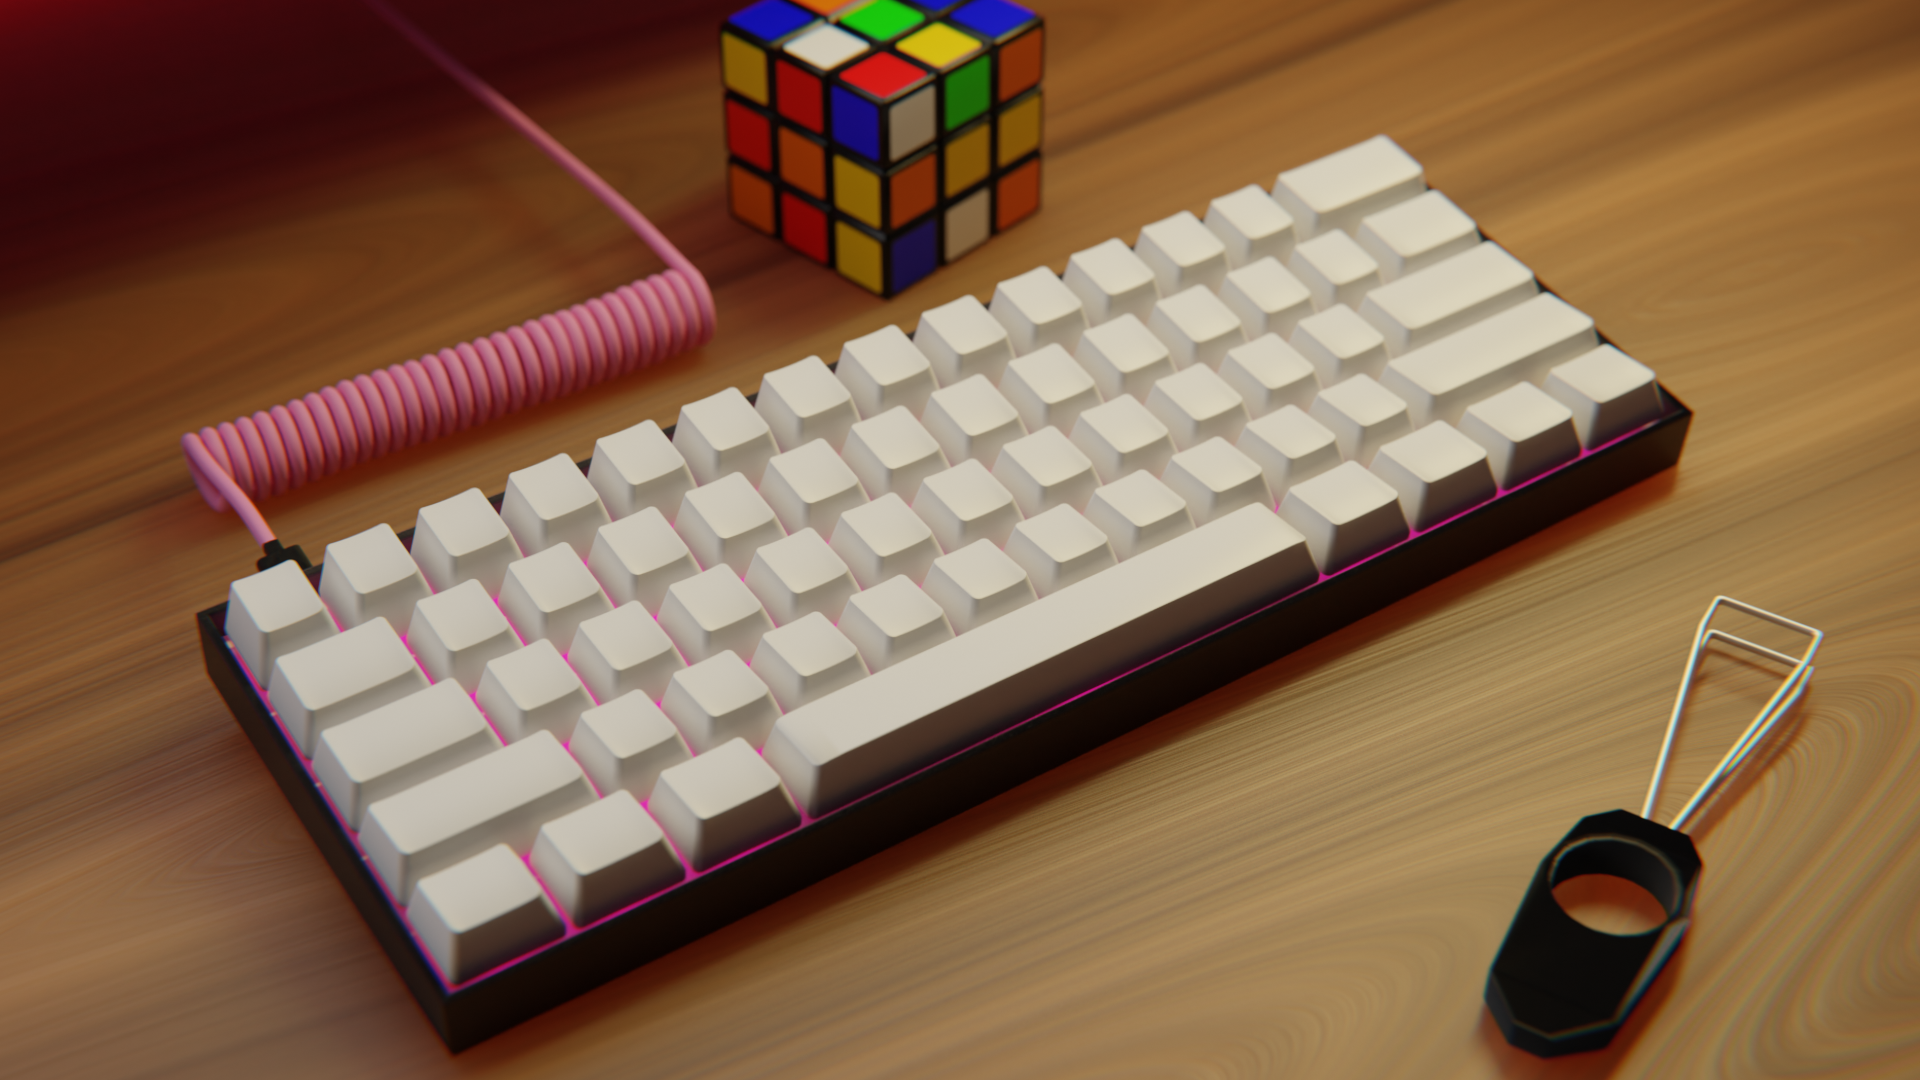 Tastiera 60% con keycaps bianchi, scocca nera e led rosa. Dietro la tastiera un cubo di Rubik non risolto e davanti la tastiera un keycaps puller. I keycaps sono vuoti. Il cavo della tastiera è a spirale ed è rosa. Il tavolo della scrivania è di legno